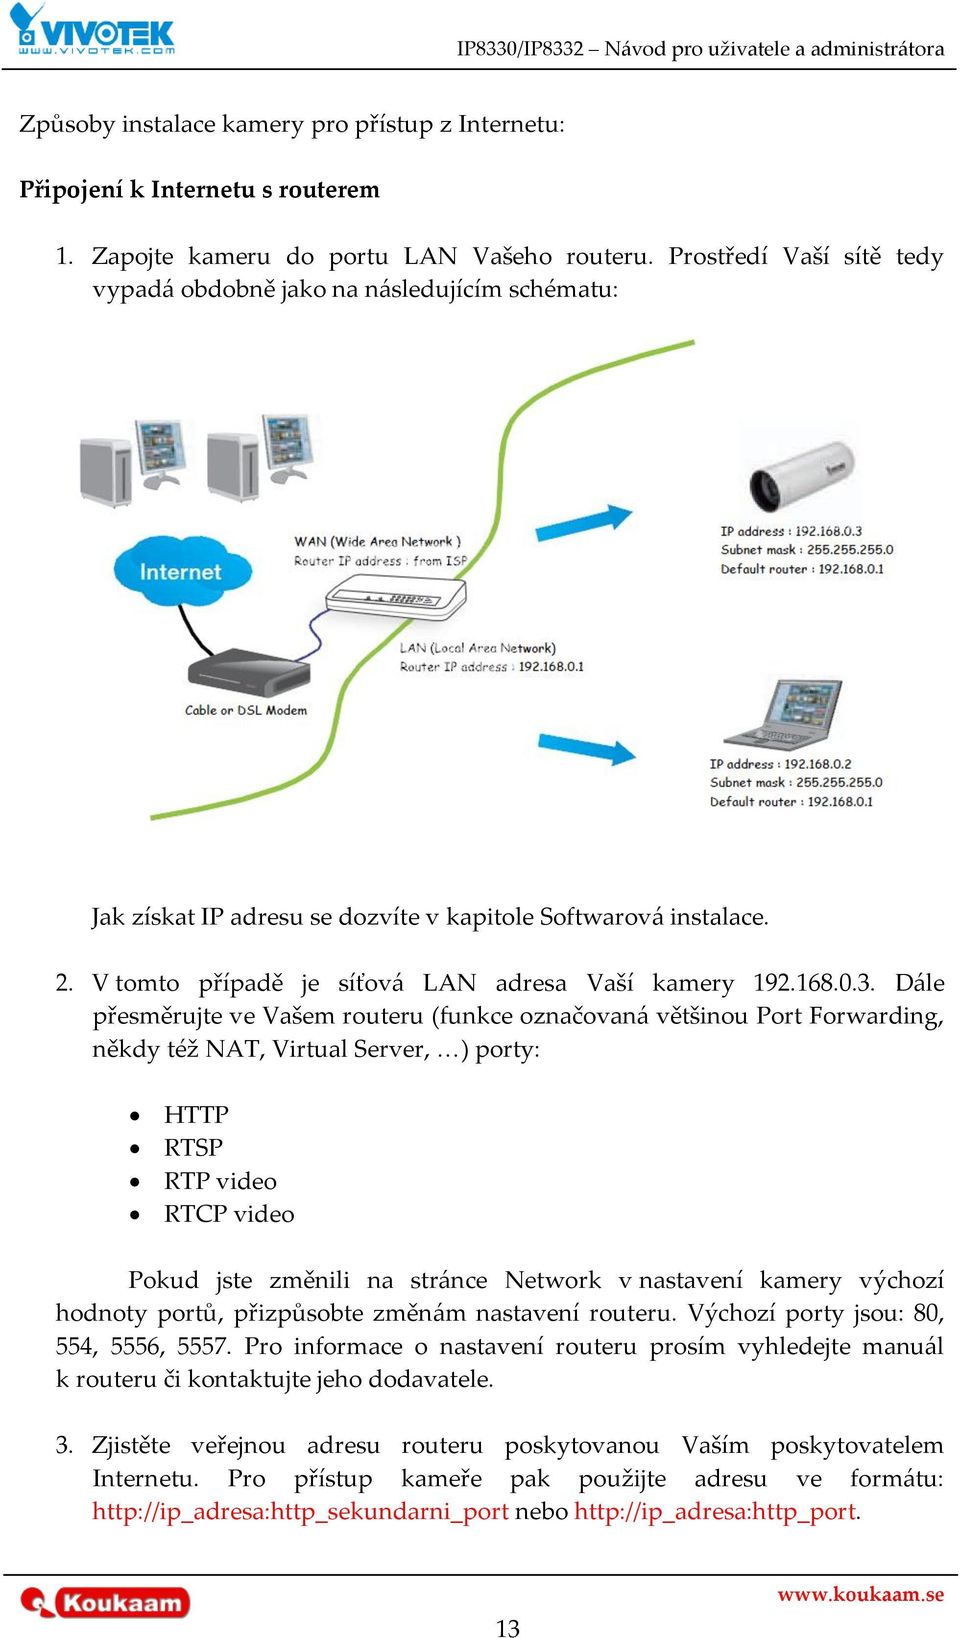 D{le přesměrujte ve Vašem routeru (funkce označovan{ většinou Port Forwarding, někdy též NAT, Virtual Server, <) porty: HTTP RTSP RTP video RTCP video Pokud jste změnili na str{nce Network v